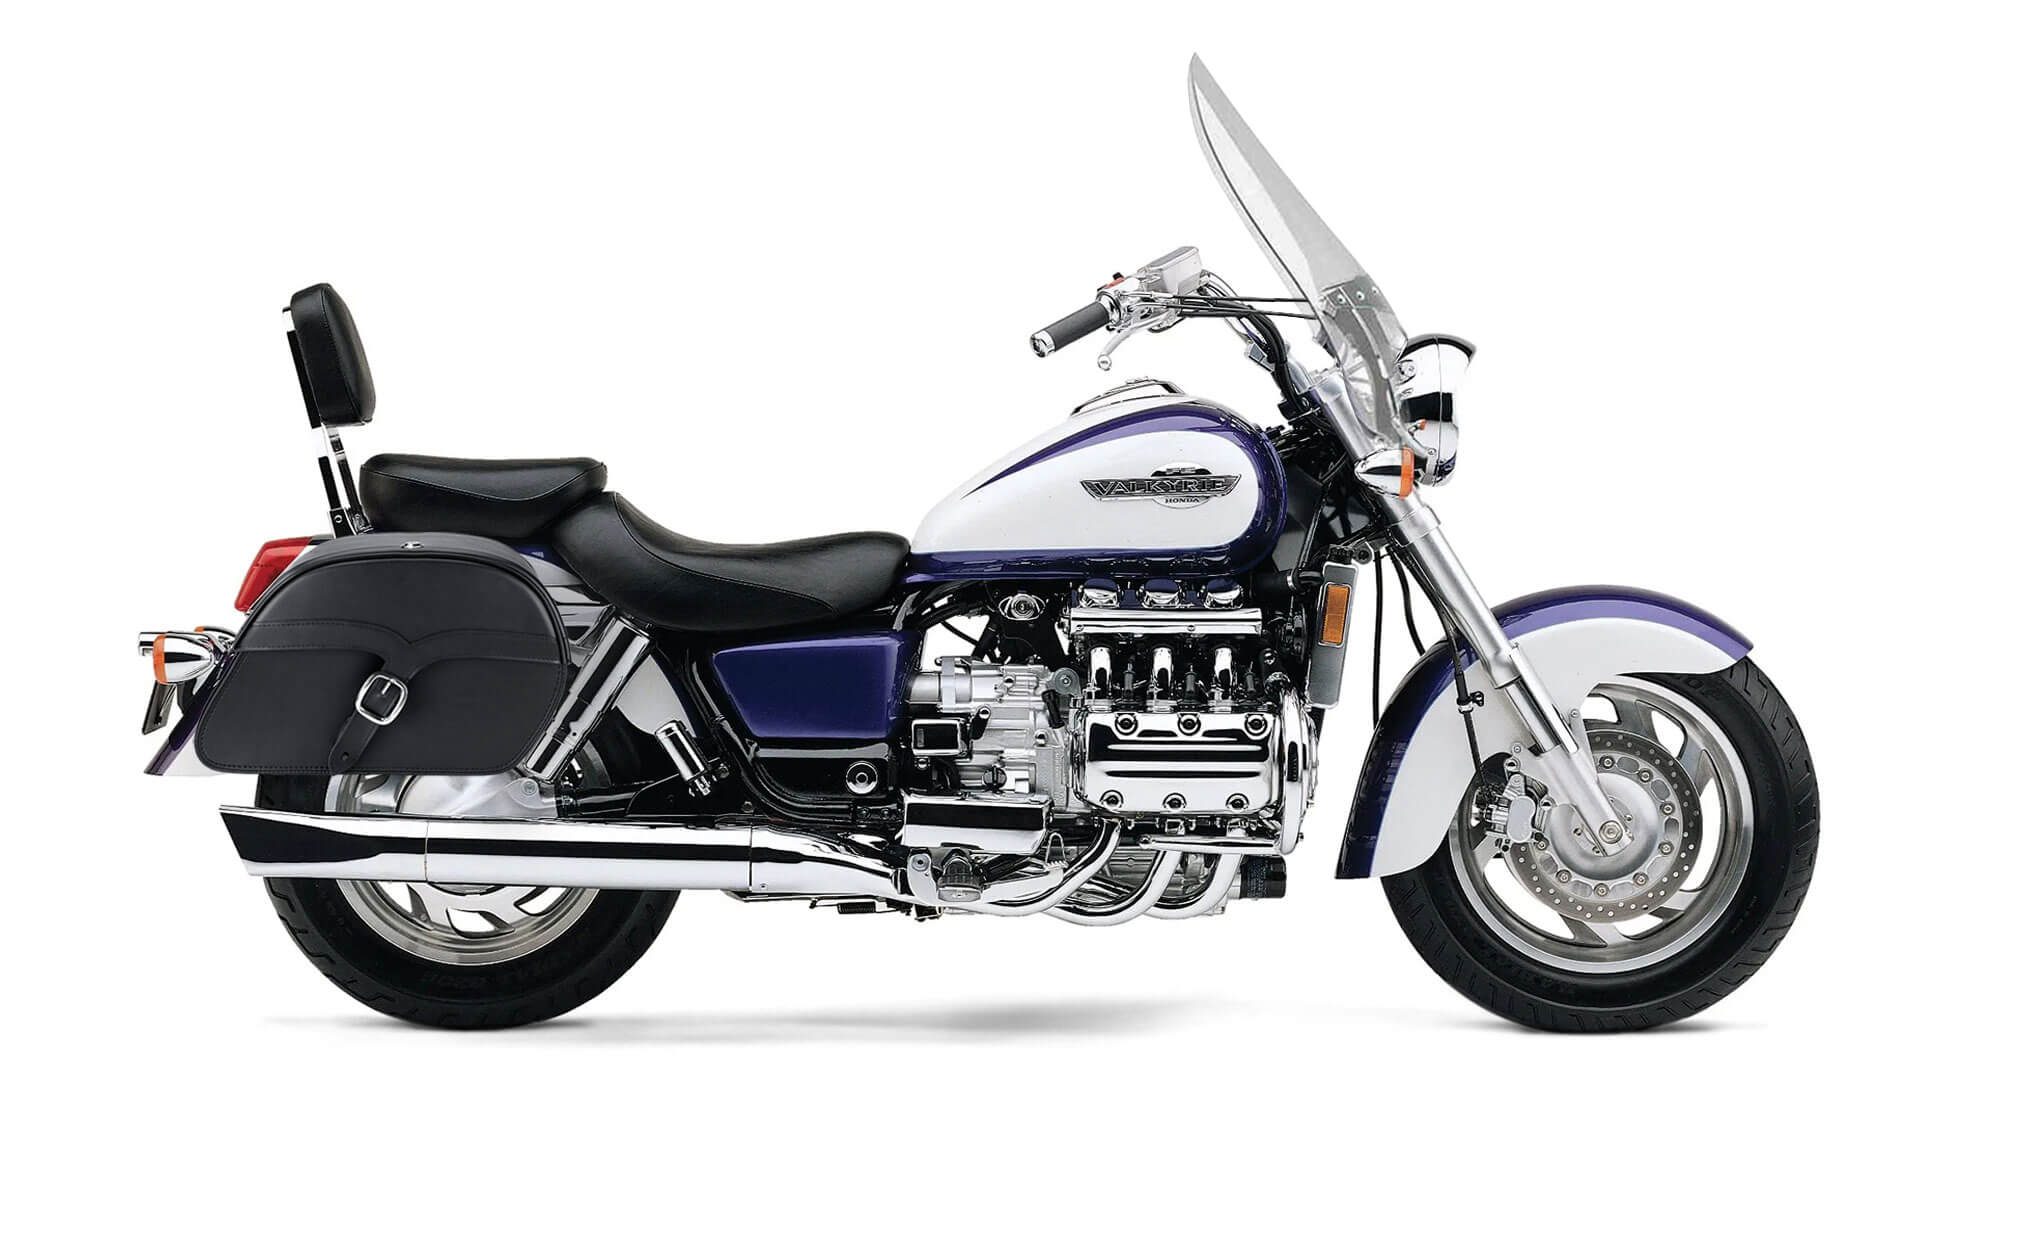 Viking Vintage Single Strap Large Honda Valkyrie 1500 Tourer Leather Motorcycle Saddlebags on Bike Photo @expand